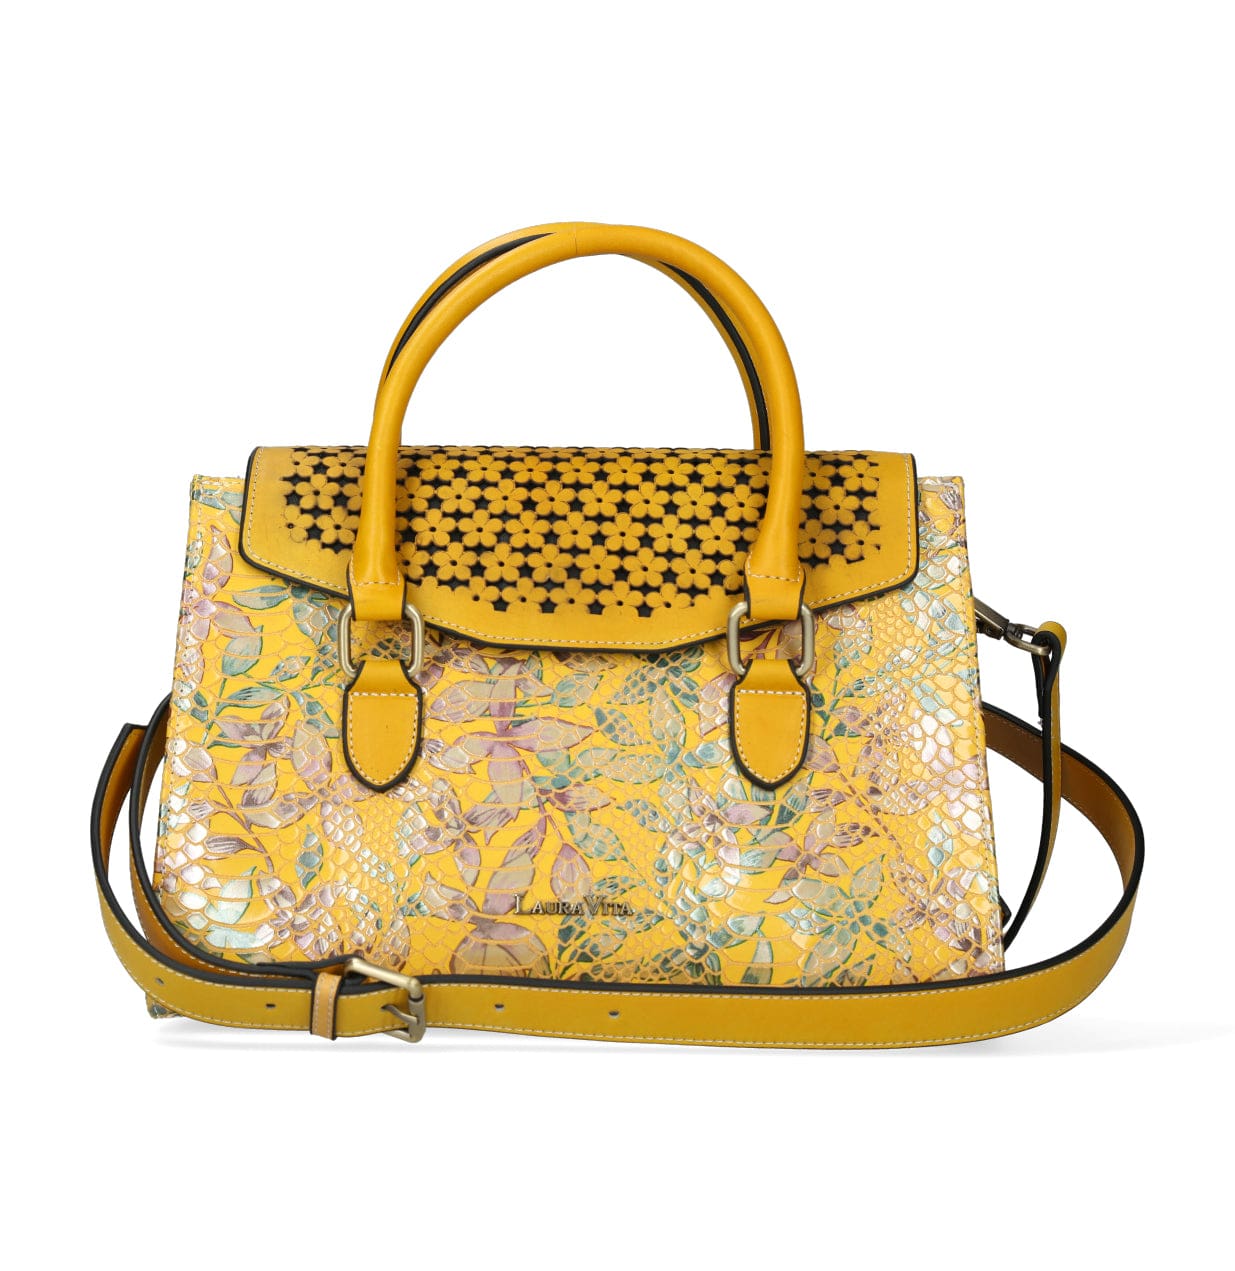 Taschen Handtasche 4679 - Gelb - Taschen